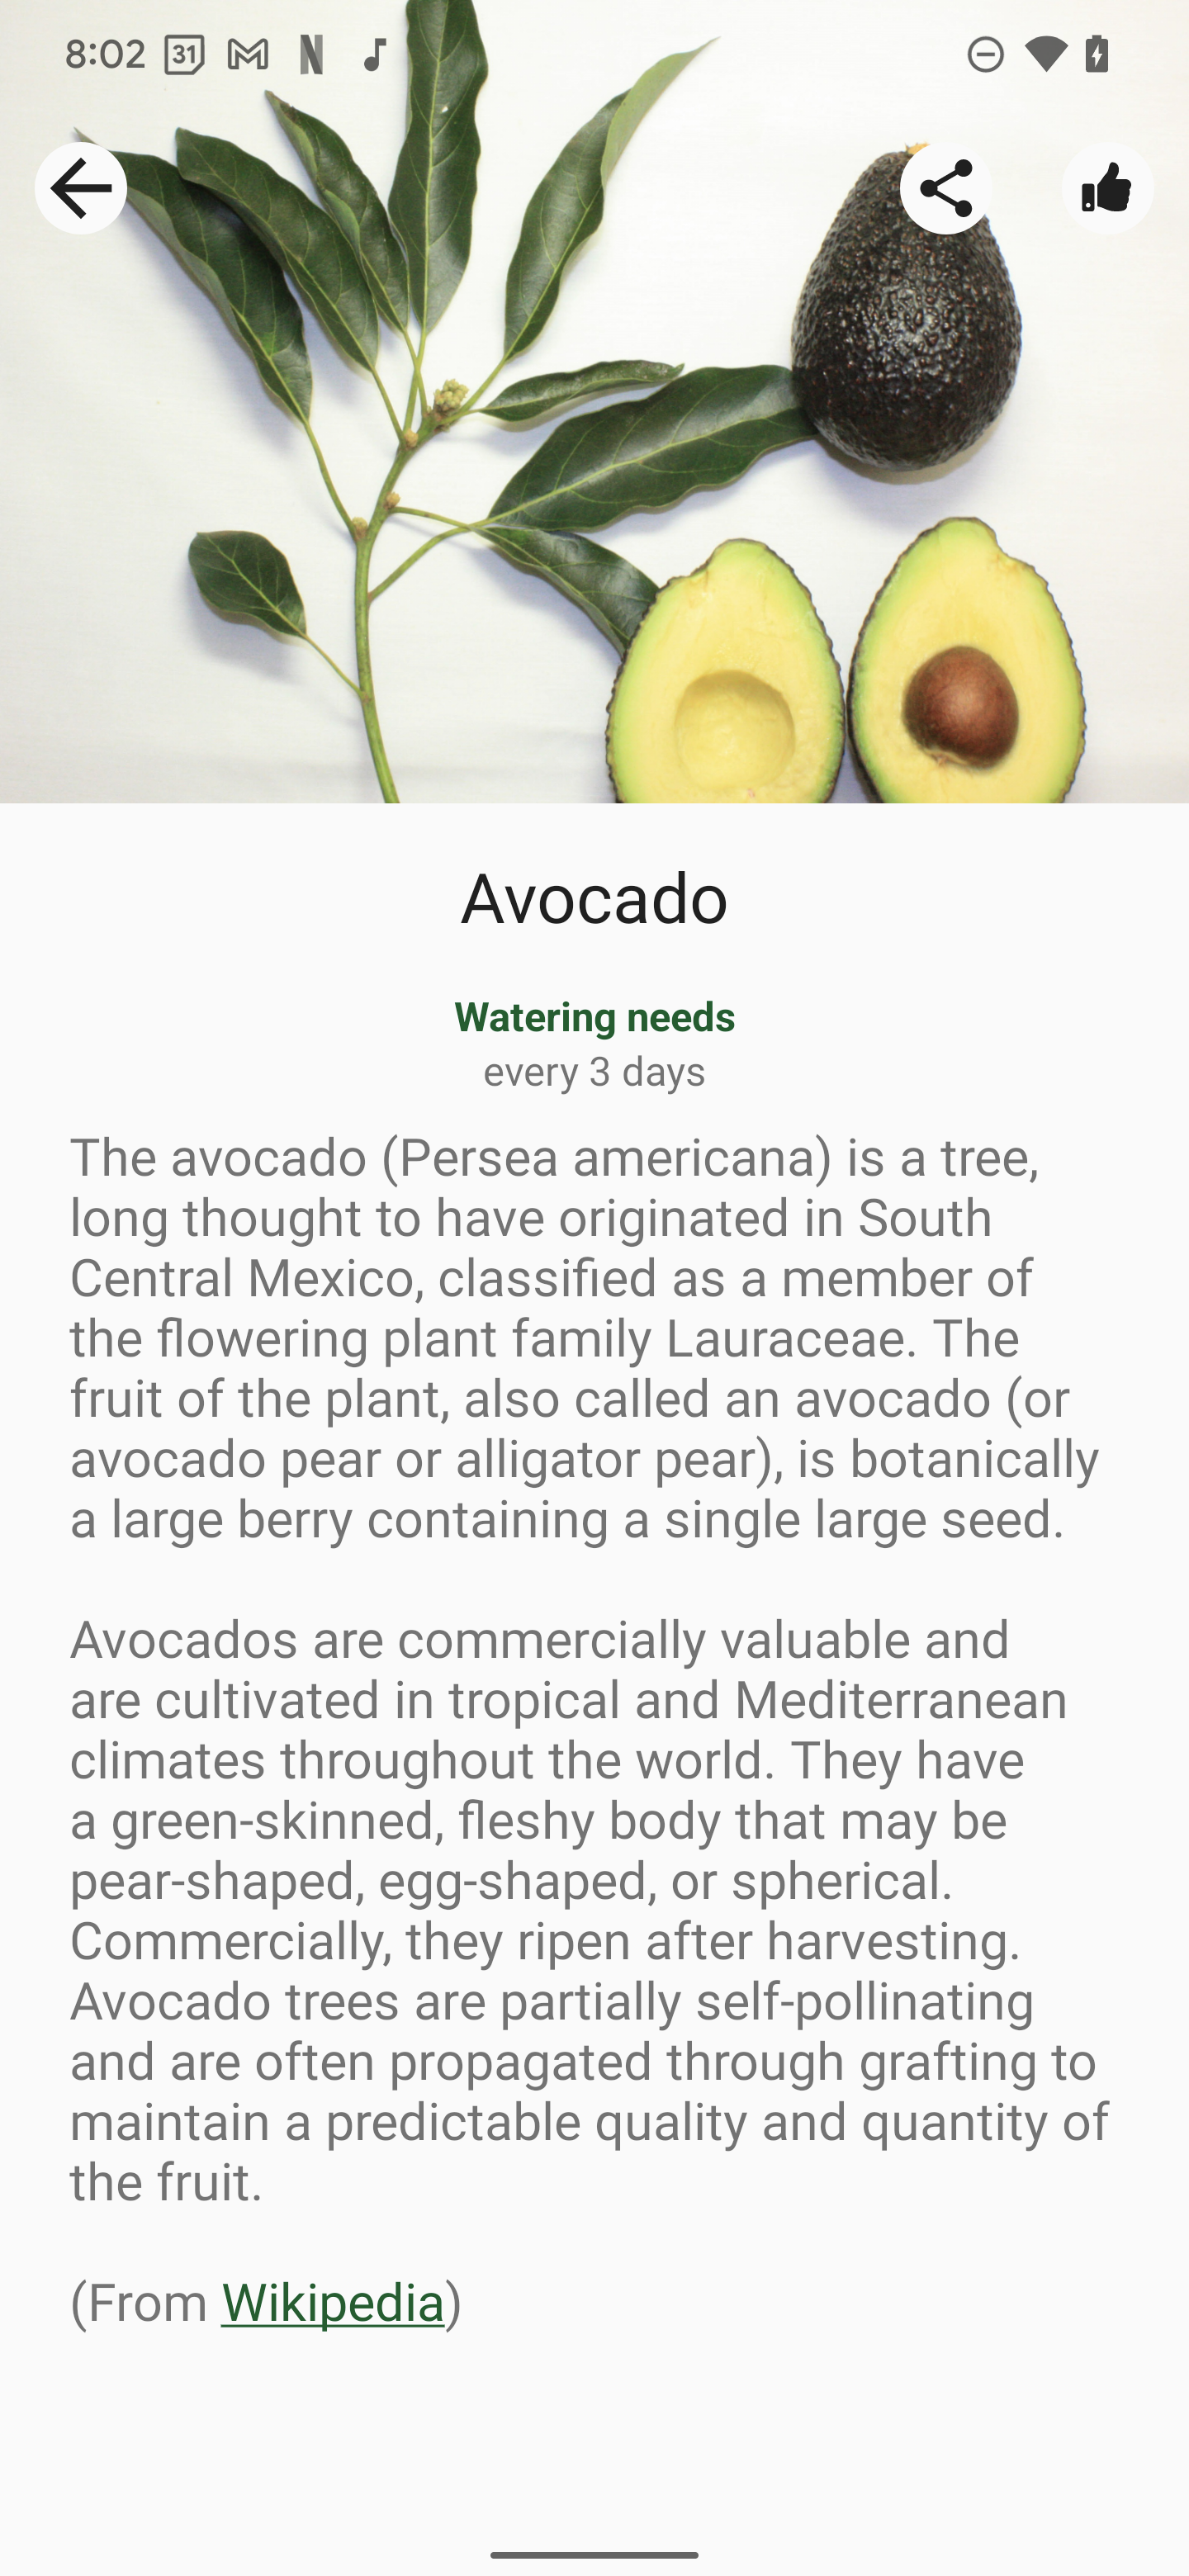 info-avocado.png